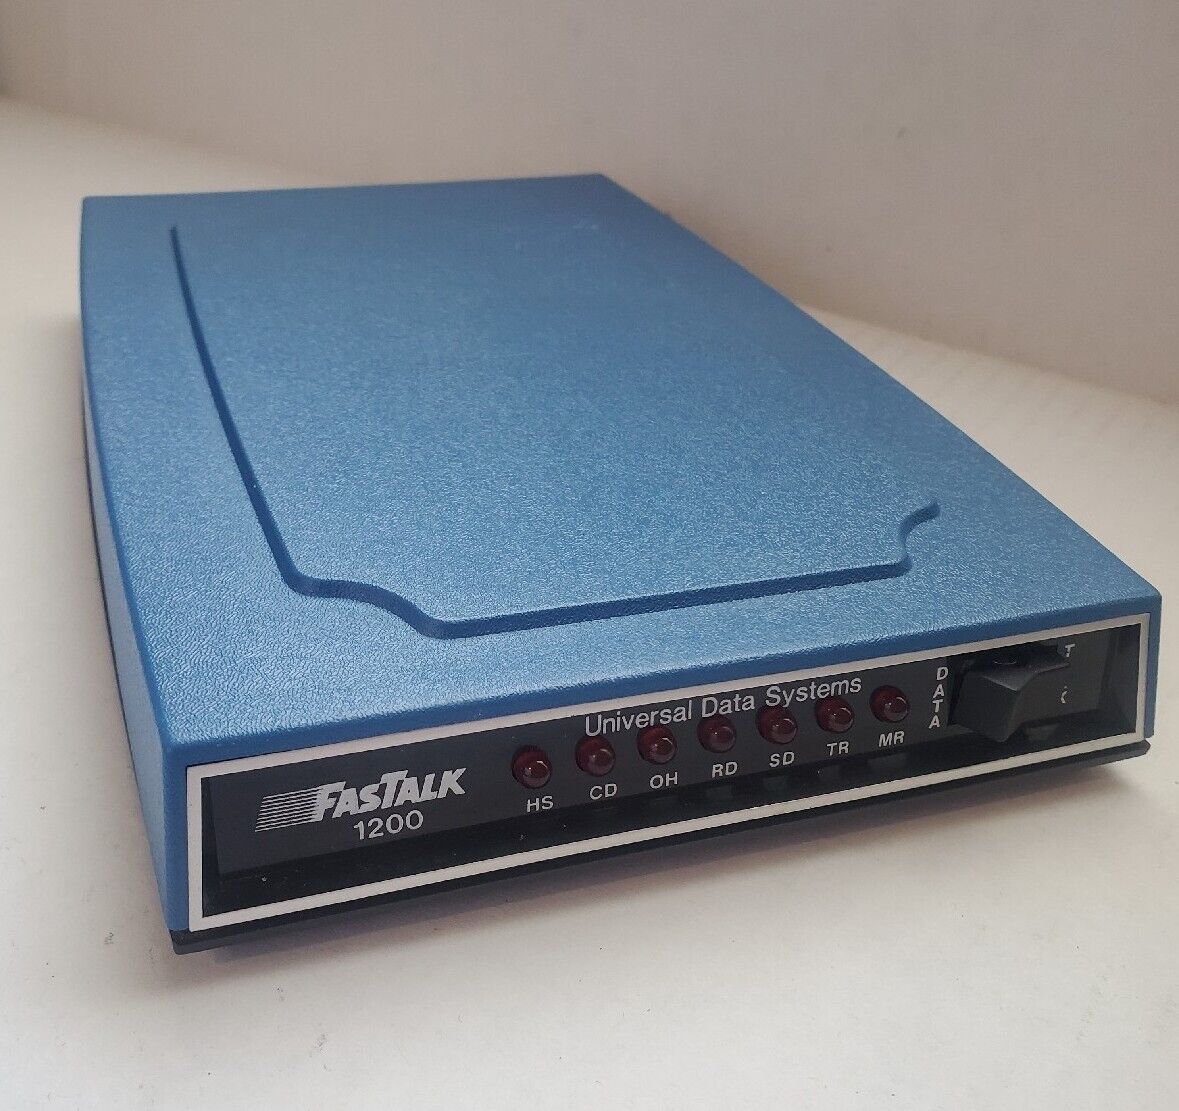 Vintage UDS Fastalk 1200 External Modem - Universal Data Systems - Working